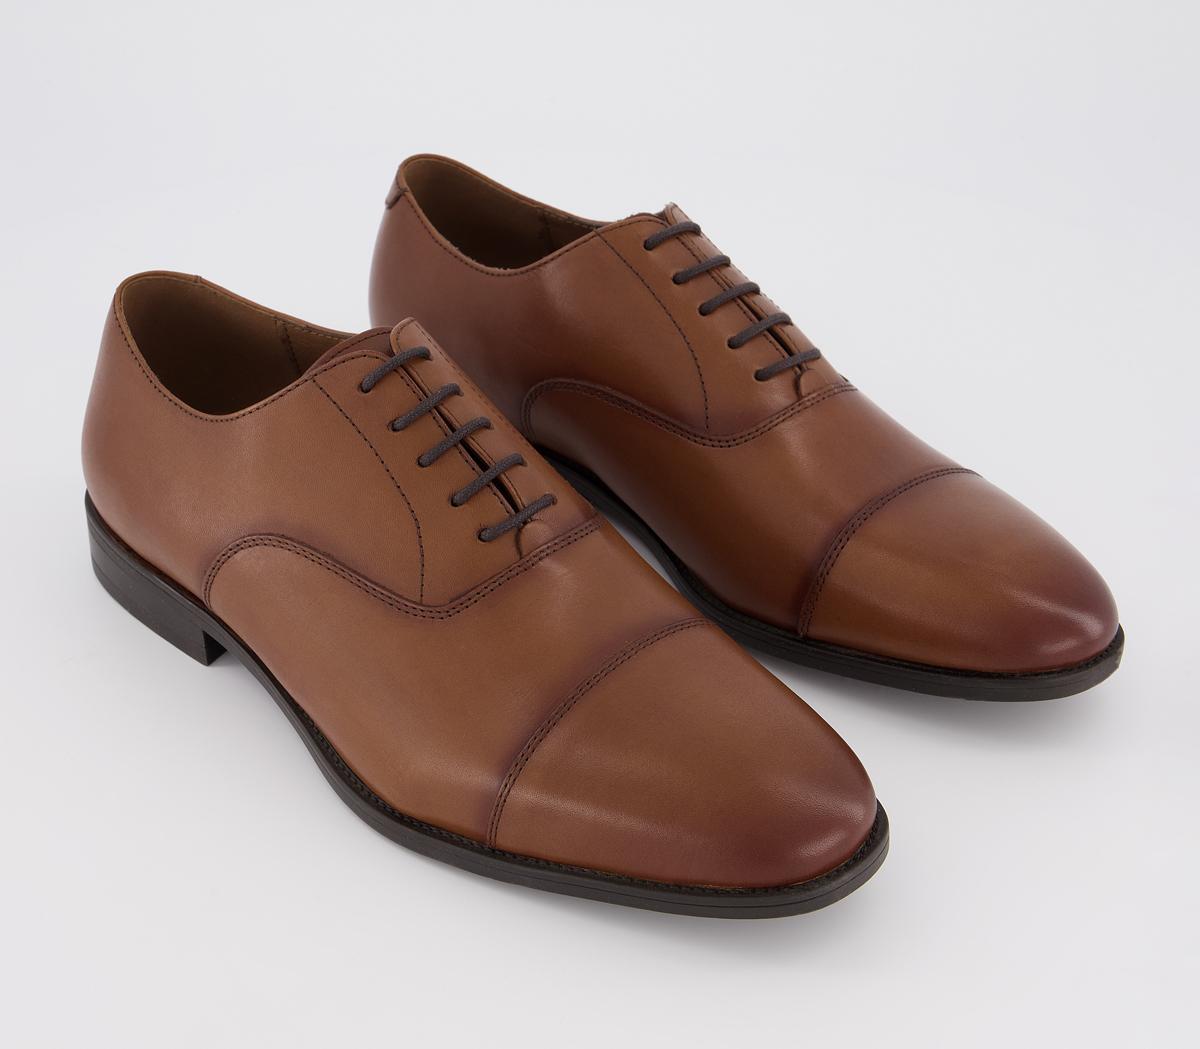 Office Memo Oxford Toe Cap Shoes Tan Leather - Men’s Smart Shoes